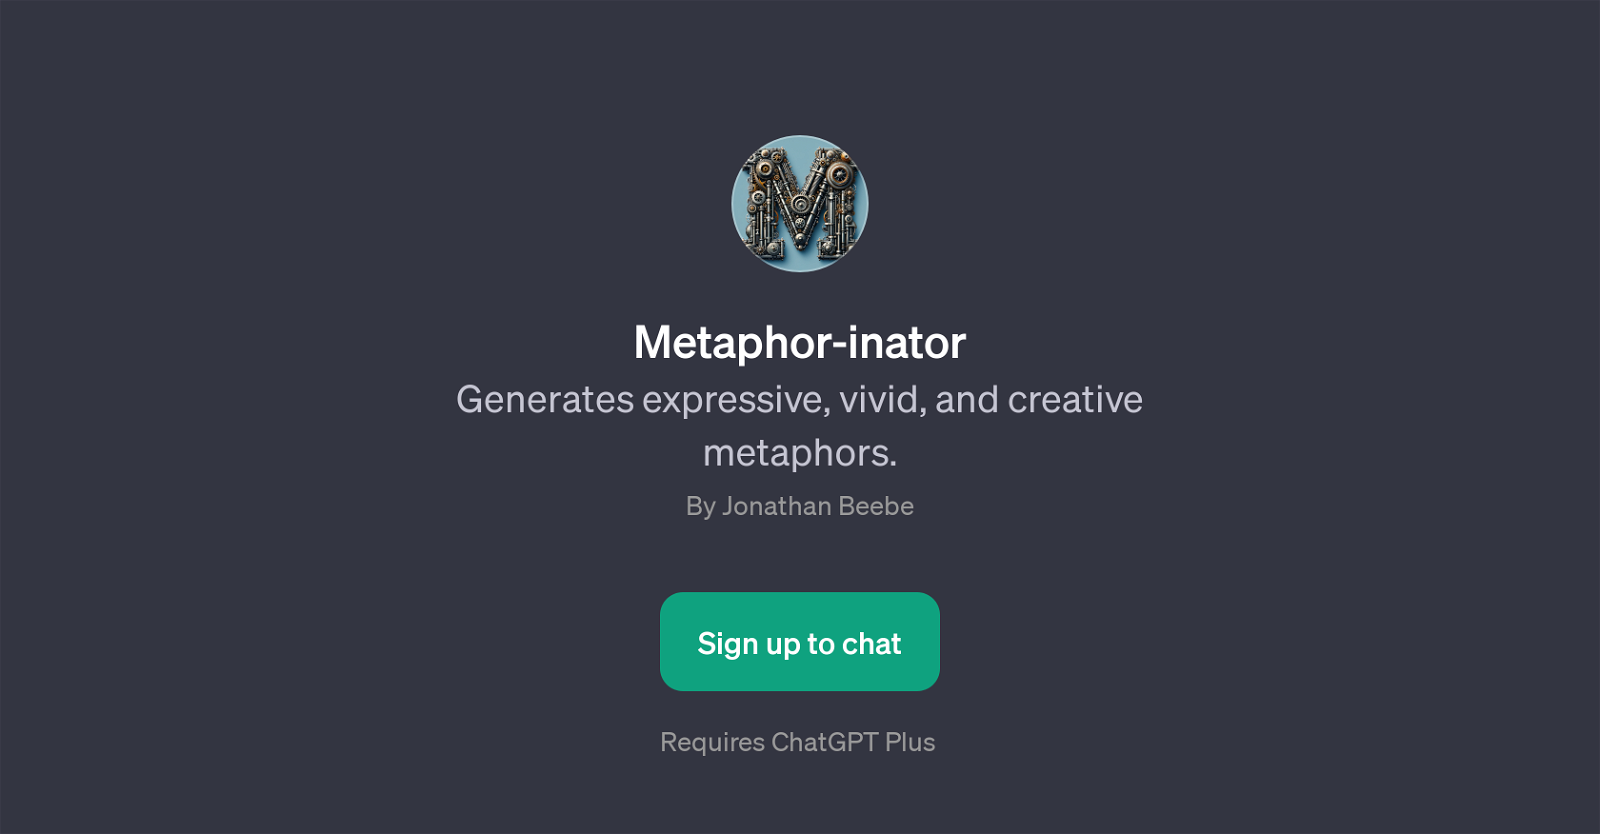 Metaphor-inator website